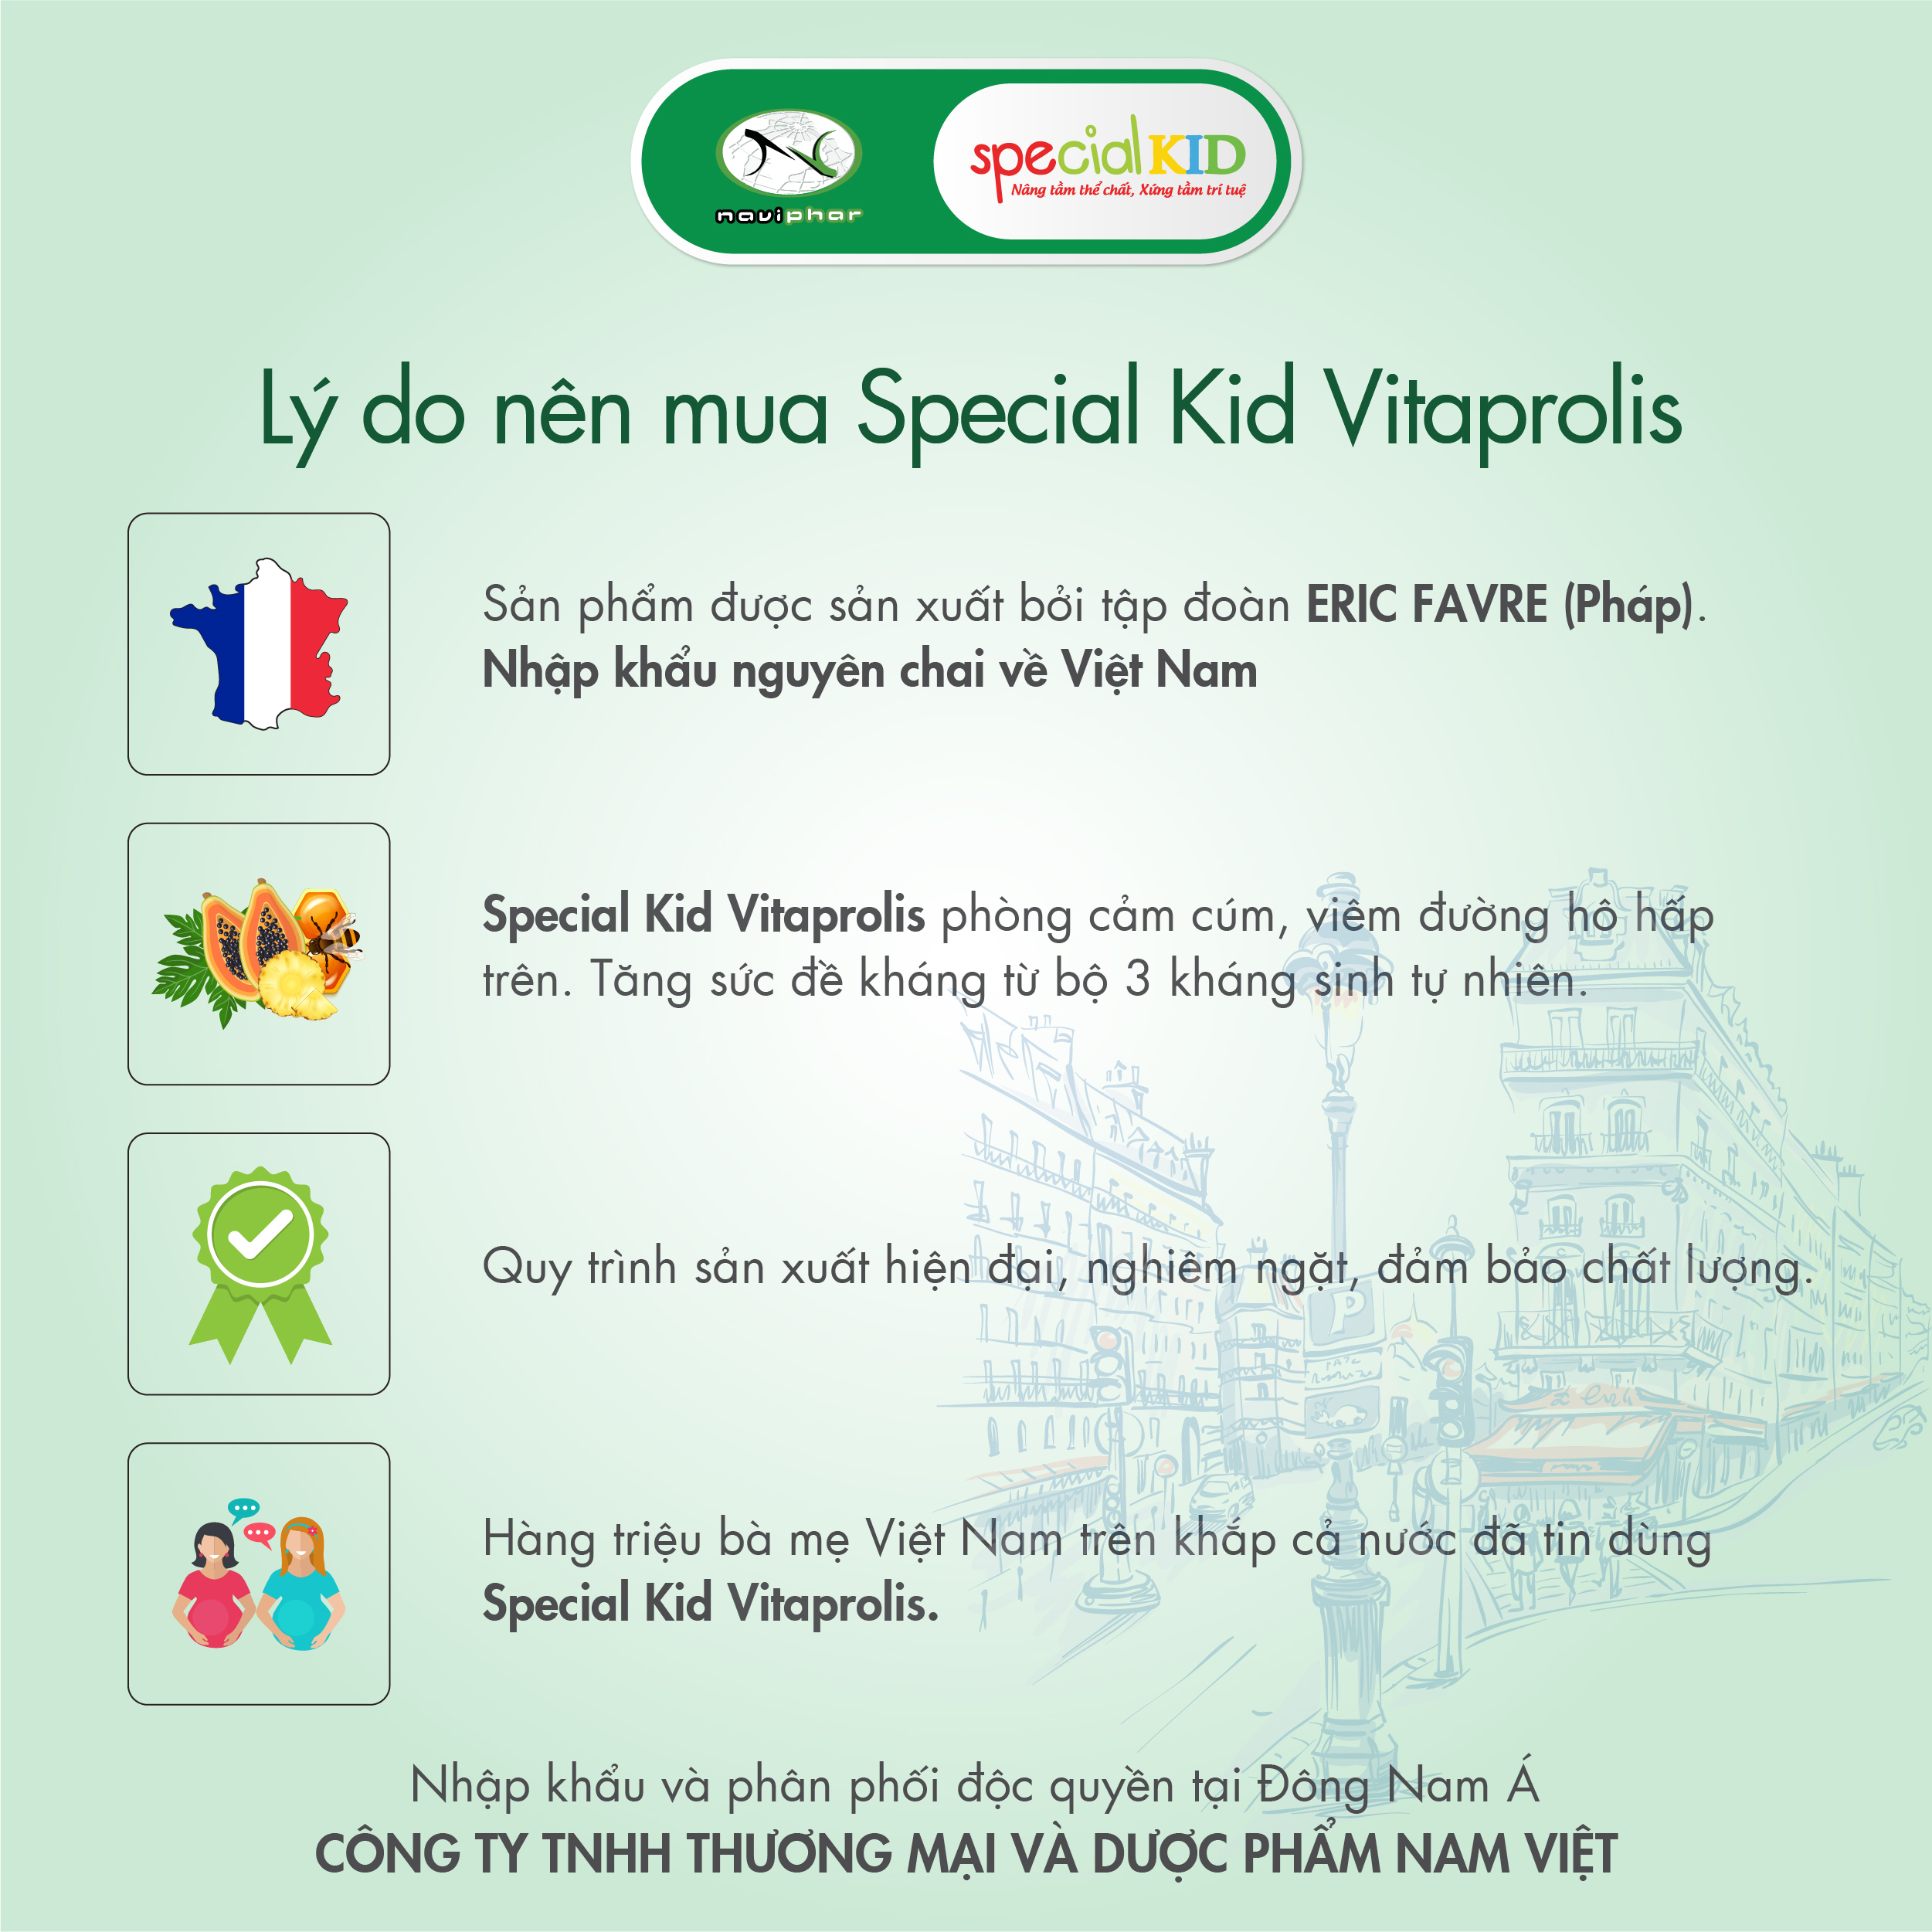 TPBVSK Special Kid Vitaprolis - Hỗ trợ giảm nguy cơ viêm đường hô hấp trên, hỗ trợ tăng cường sức đề kháng (125ml)[Siro - Nhập khẩu Pháp]